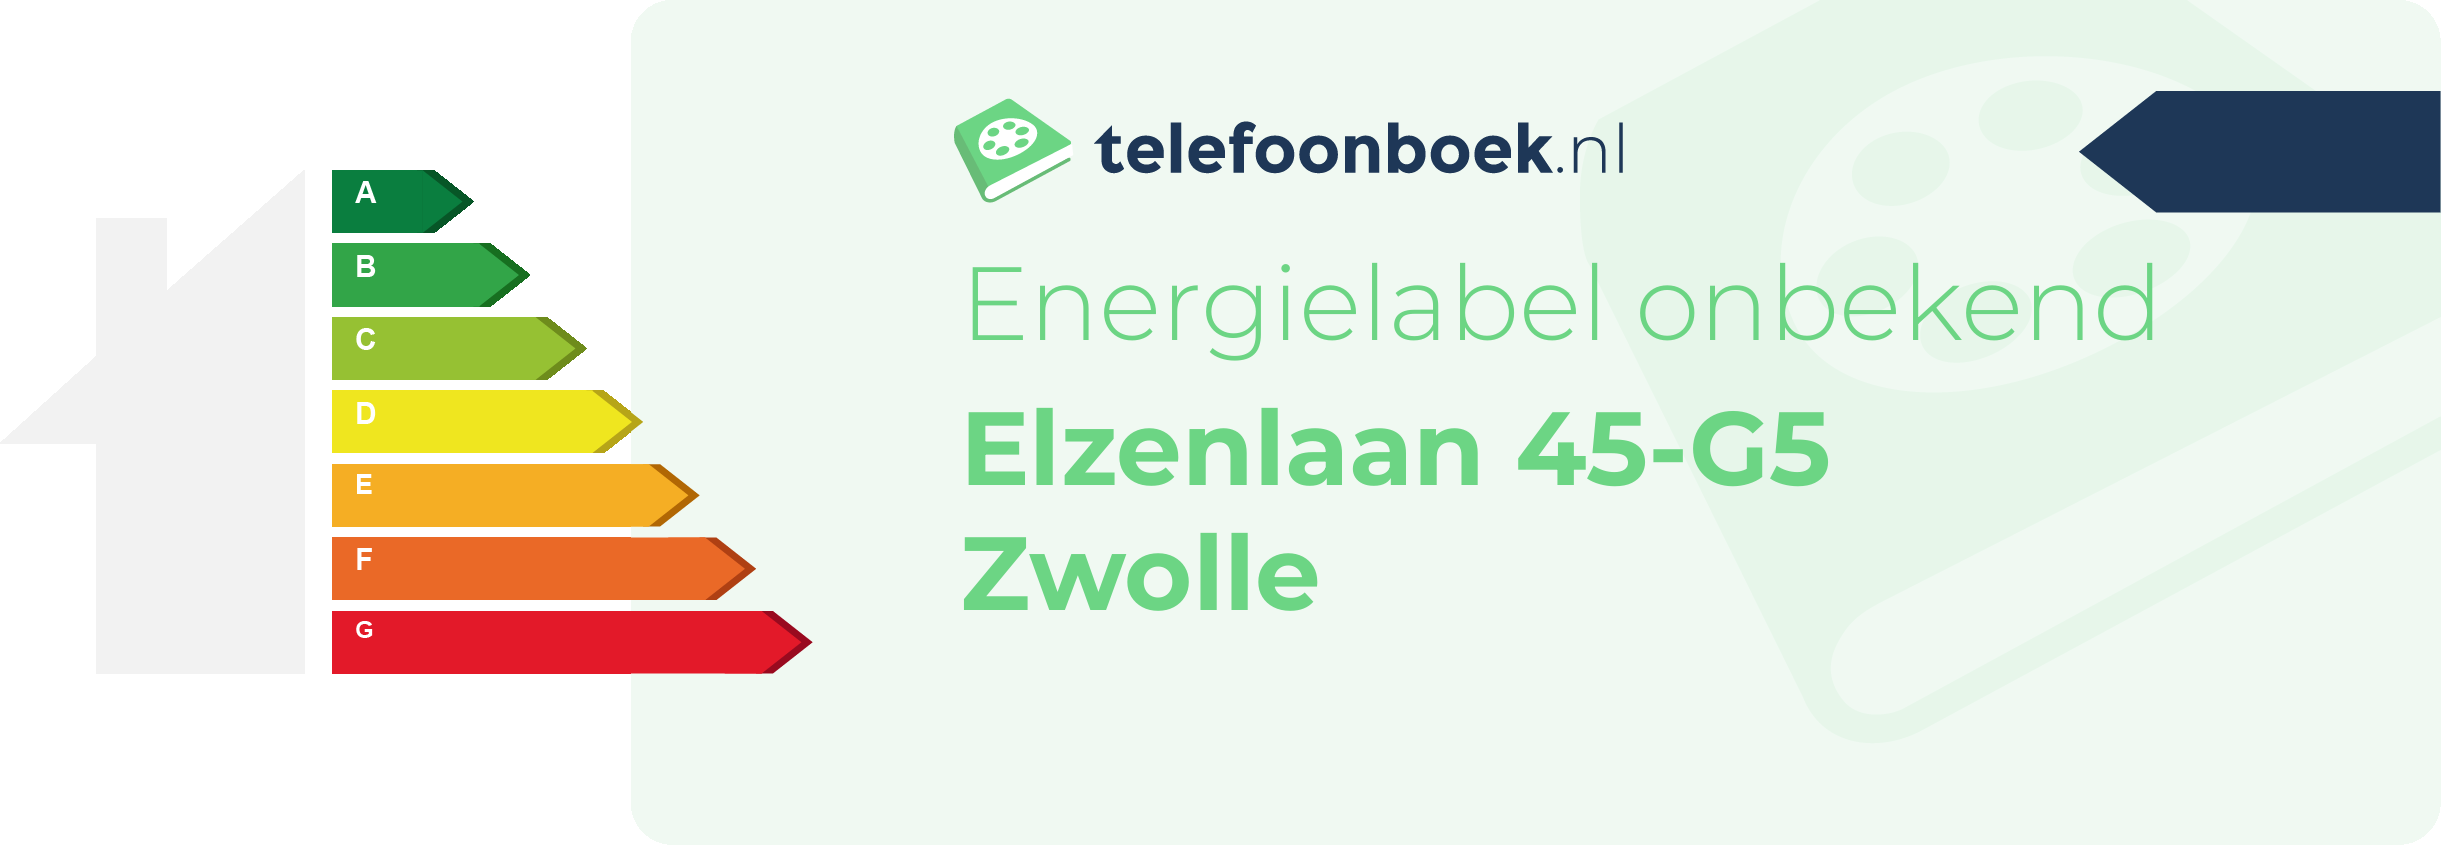 Energielabel Elzenlaan 45-G5 Zwolle